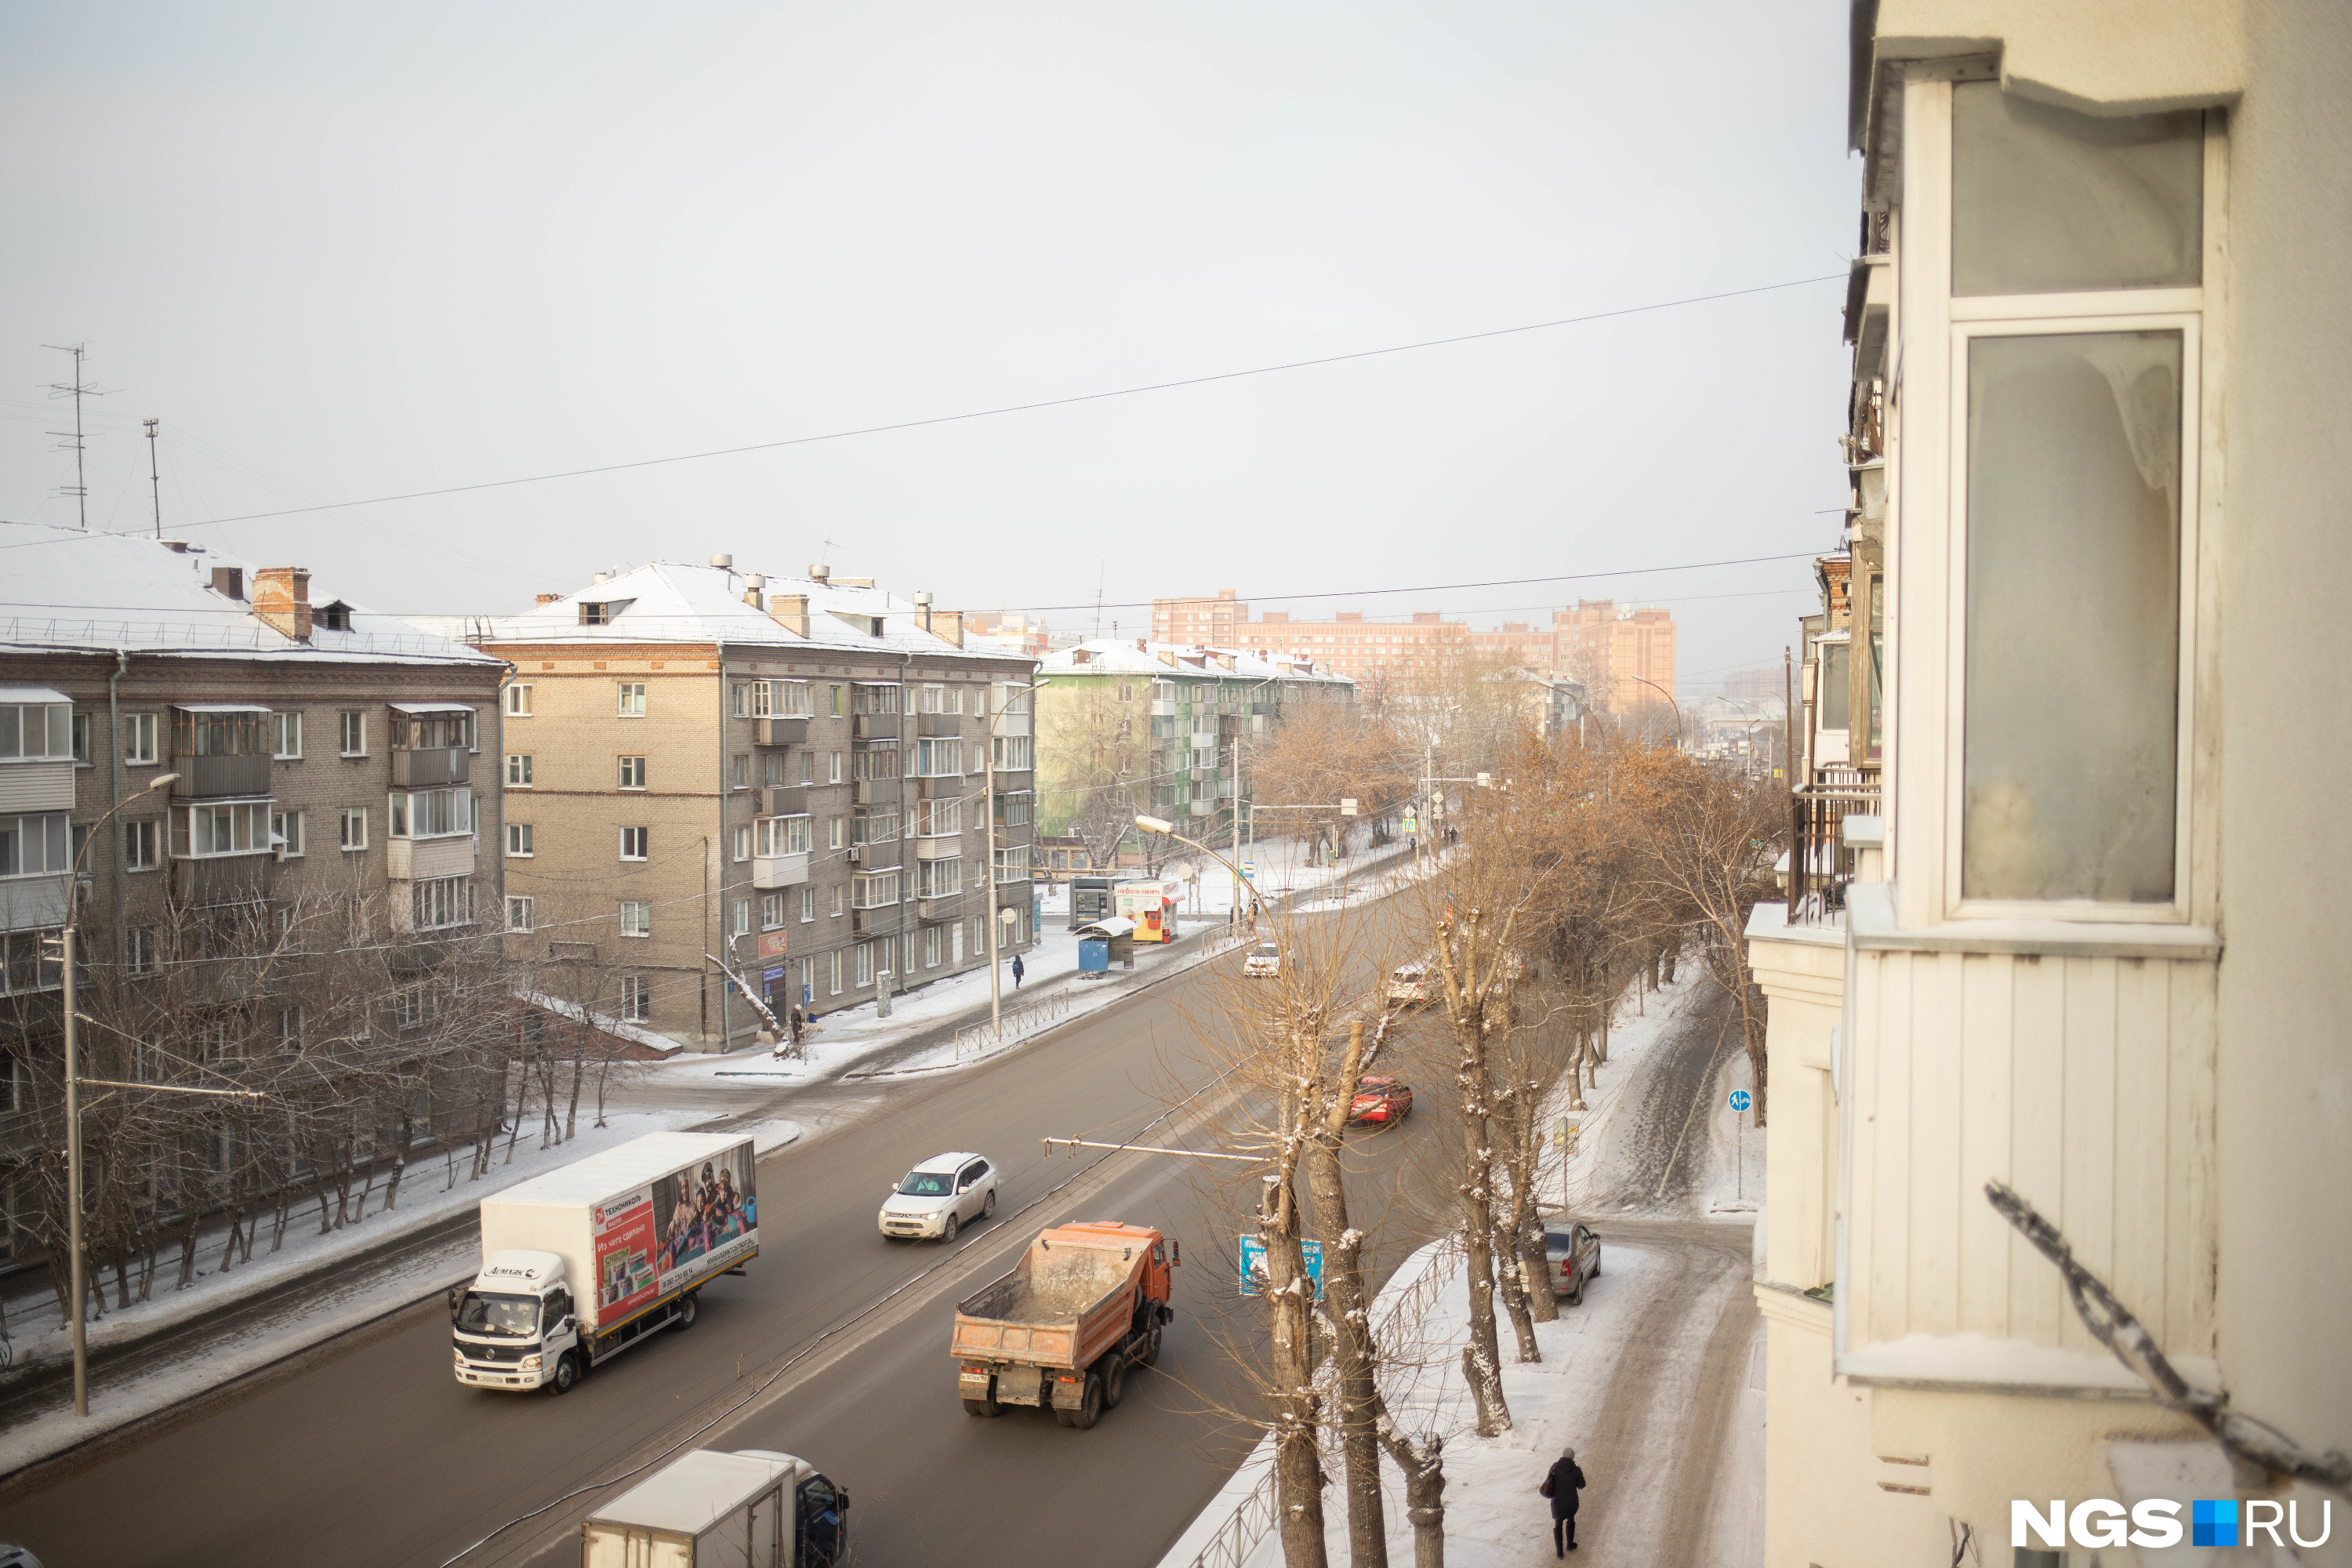 Ремонт в «сталинке» — как новосибирцы перестраивают квартиру в старом доме,  фото до и после, 10 декабря 2022 год - 10 декабря 2022 - НГС